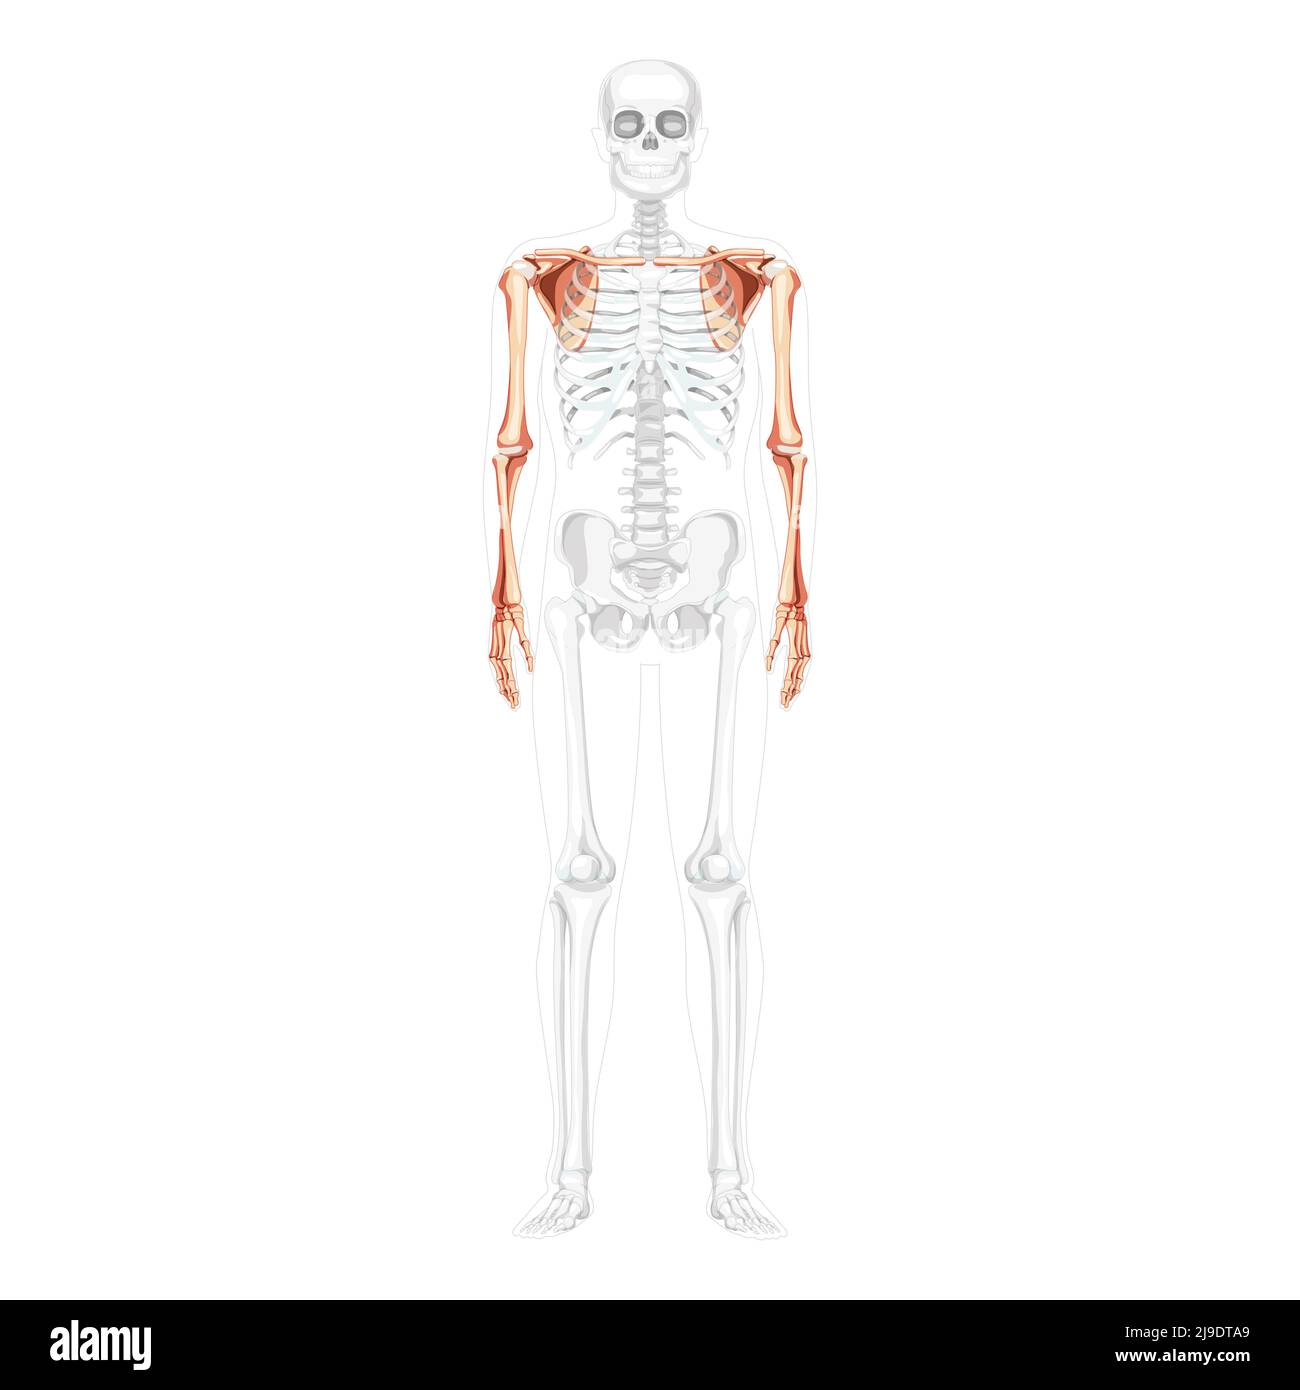 Squelette du membre supérieur bras avec ceinture d'épaule vue avant humaine avec position des os partiellement transparente. Main, scapula, avant-bras ergonomiques et réalistes illustration vectorielle plate isolée Illustration de Vecteur